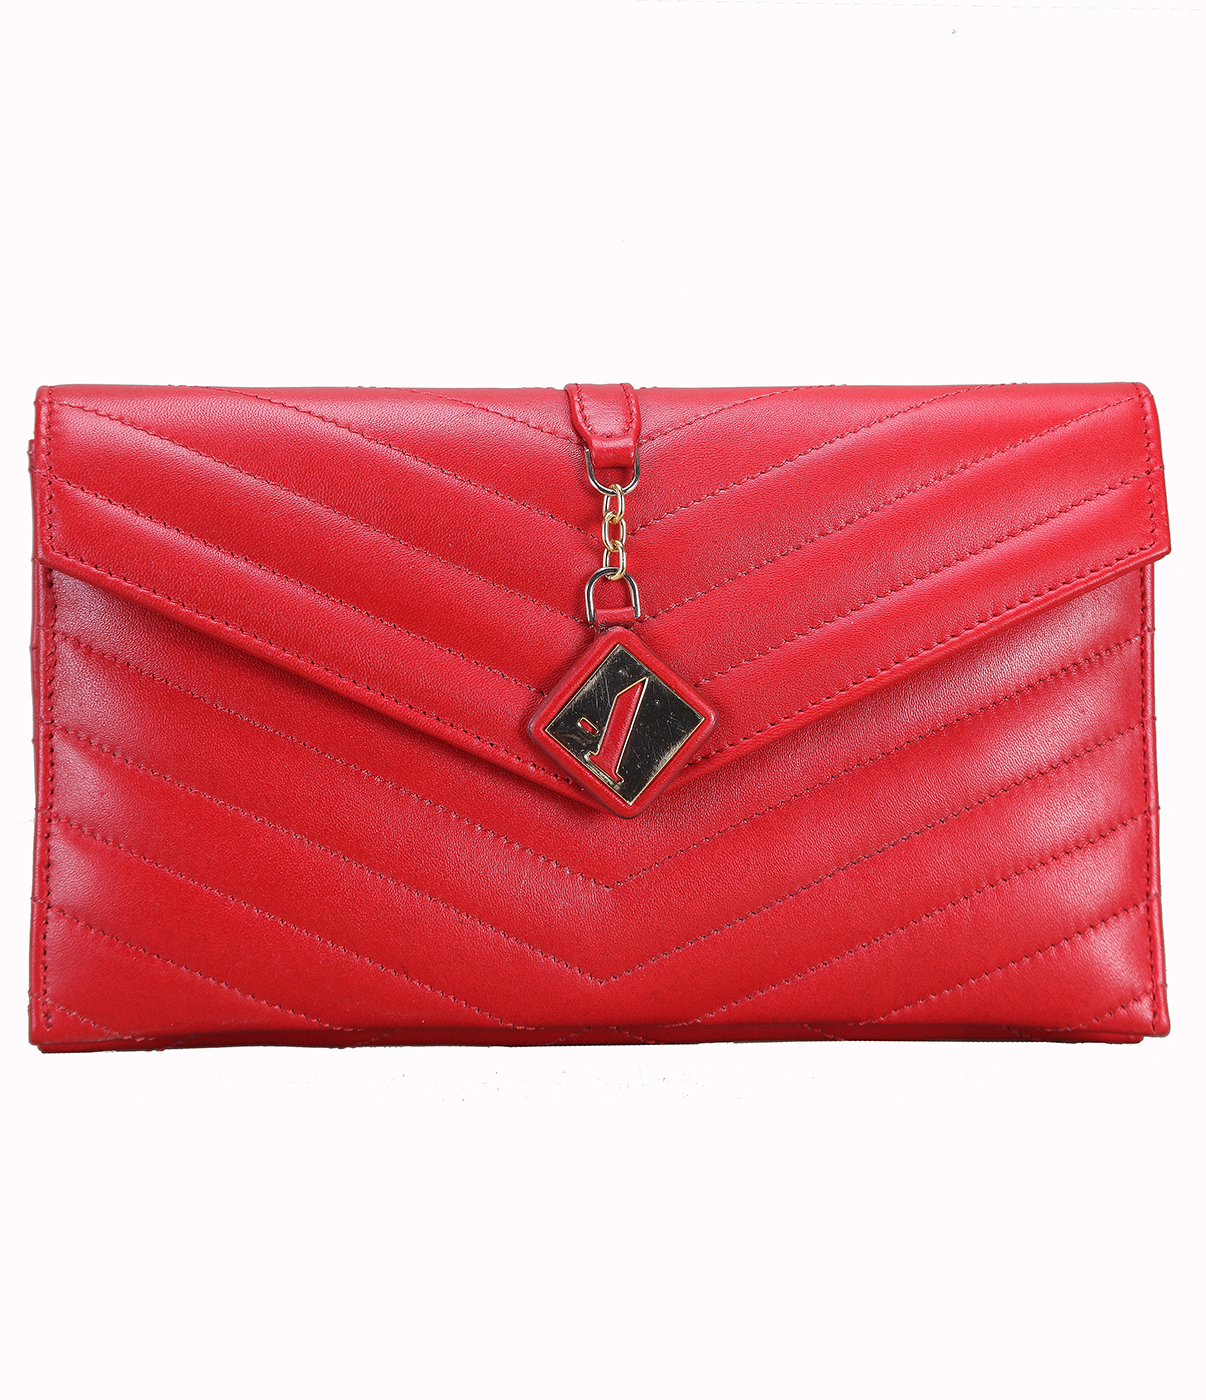 Handbag-Linda-Evening bag in Genuine Leather - Red